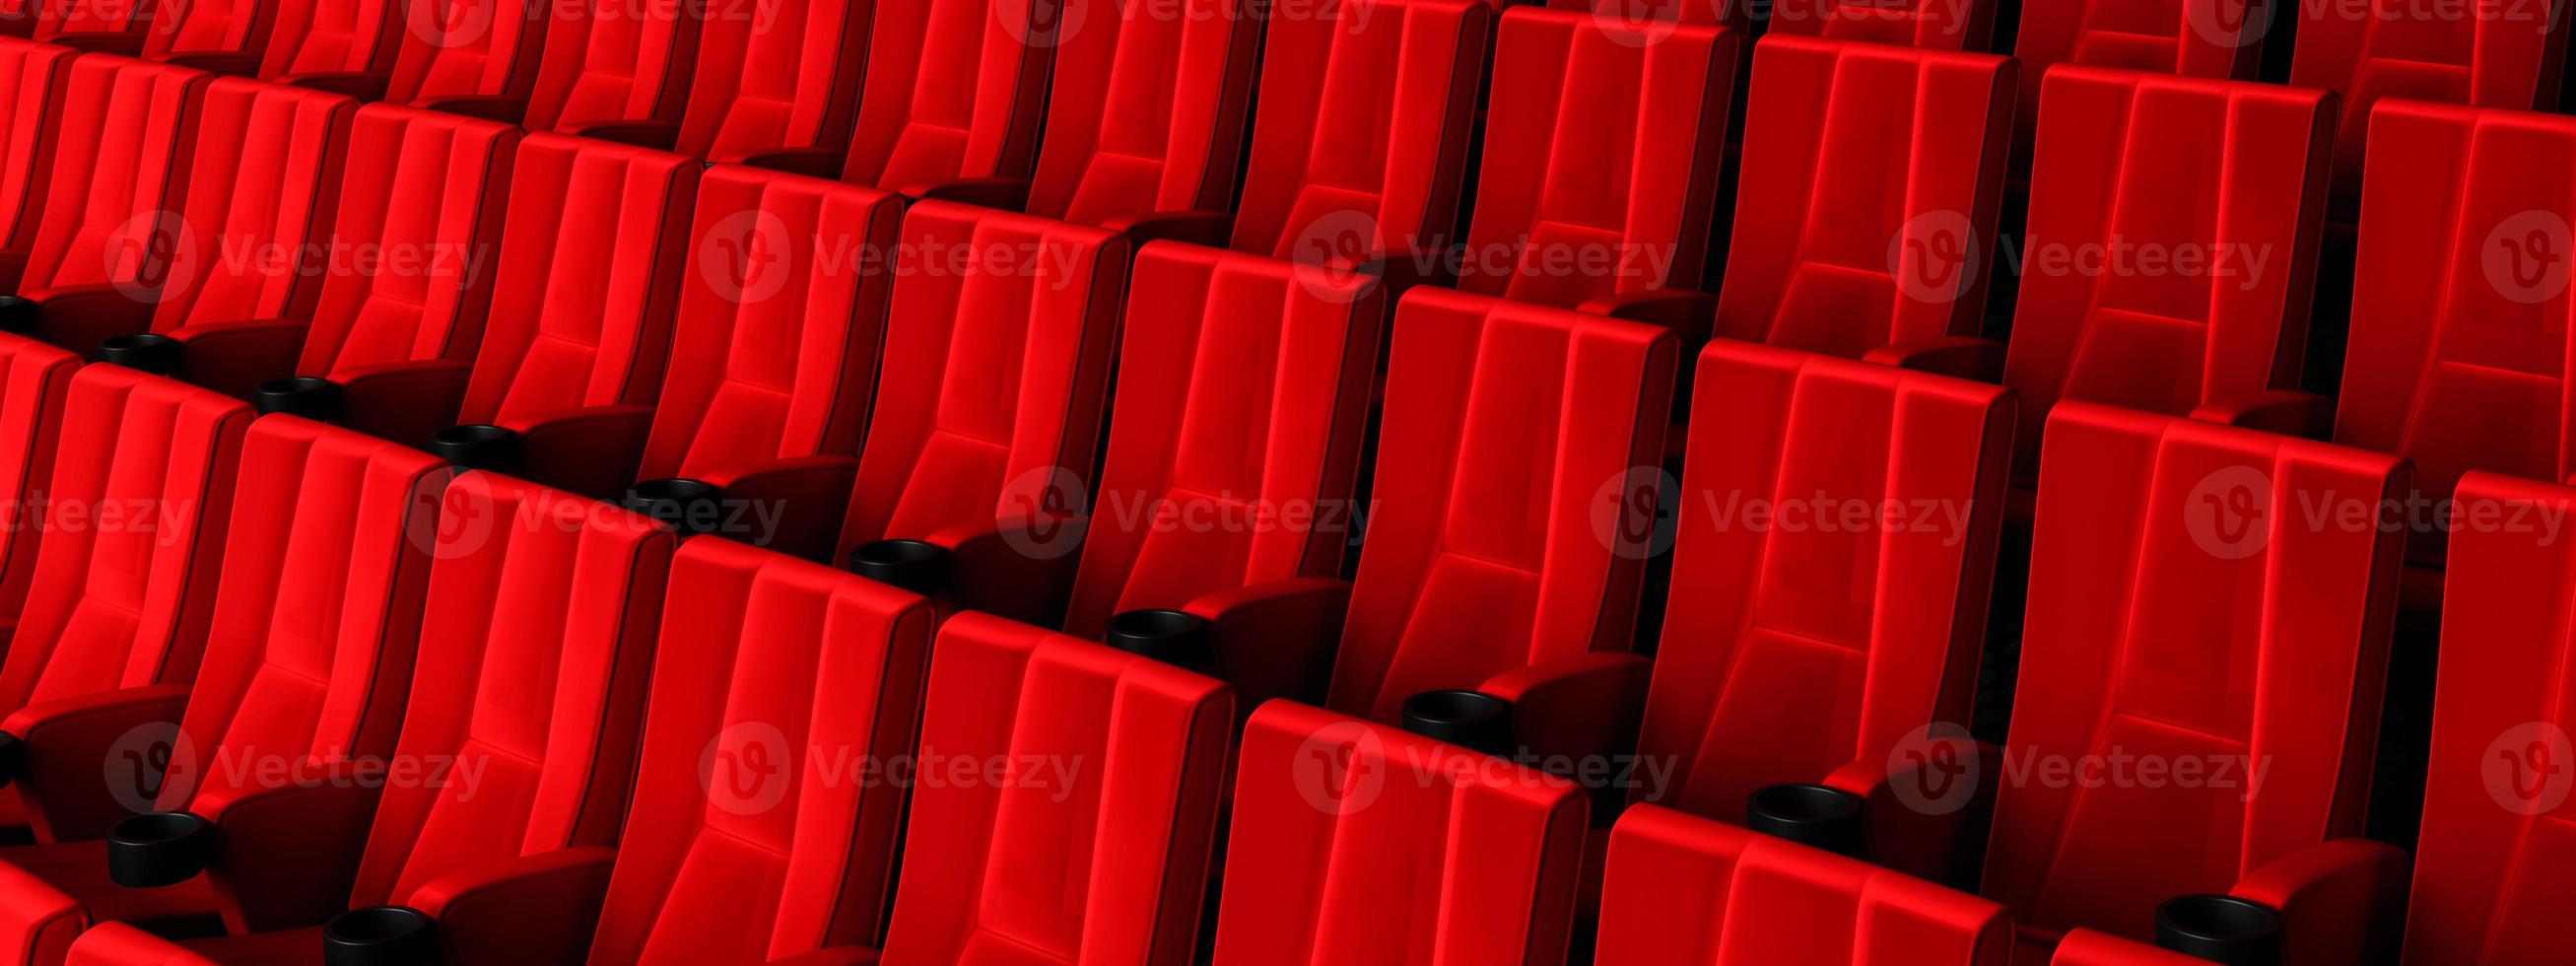 rijen rood fluwelen stoelen kijken naar films in de bioscoop met kopie ruimte banner achtergrond. entertainment- en theaterconcept. 3D illustratie weergave foto